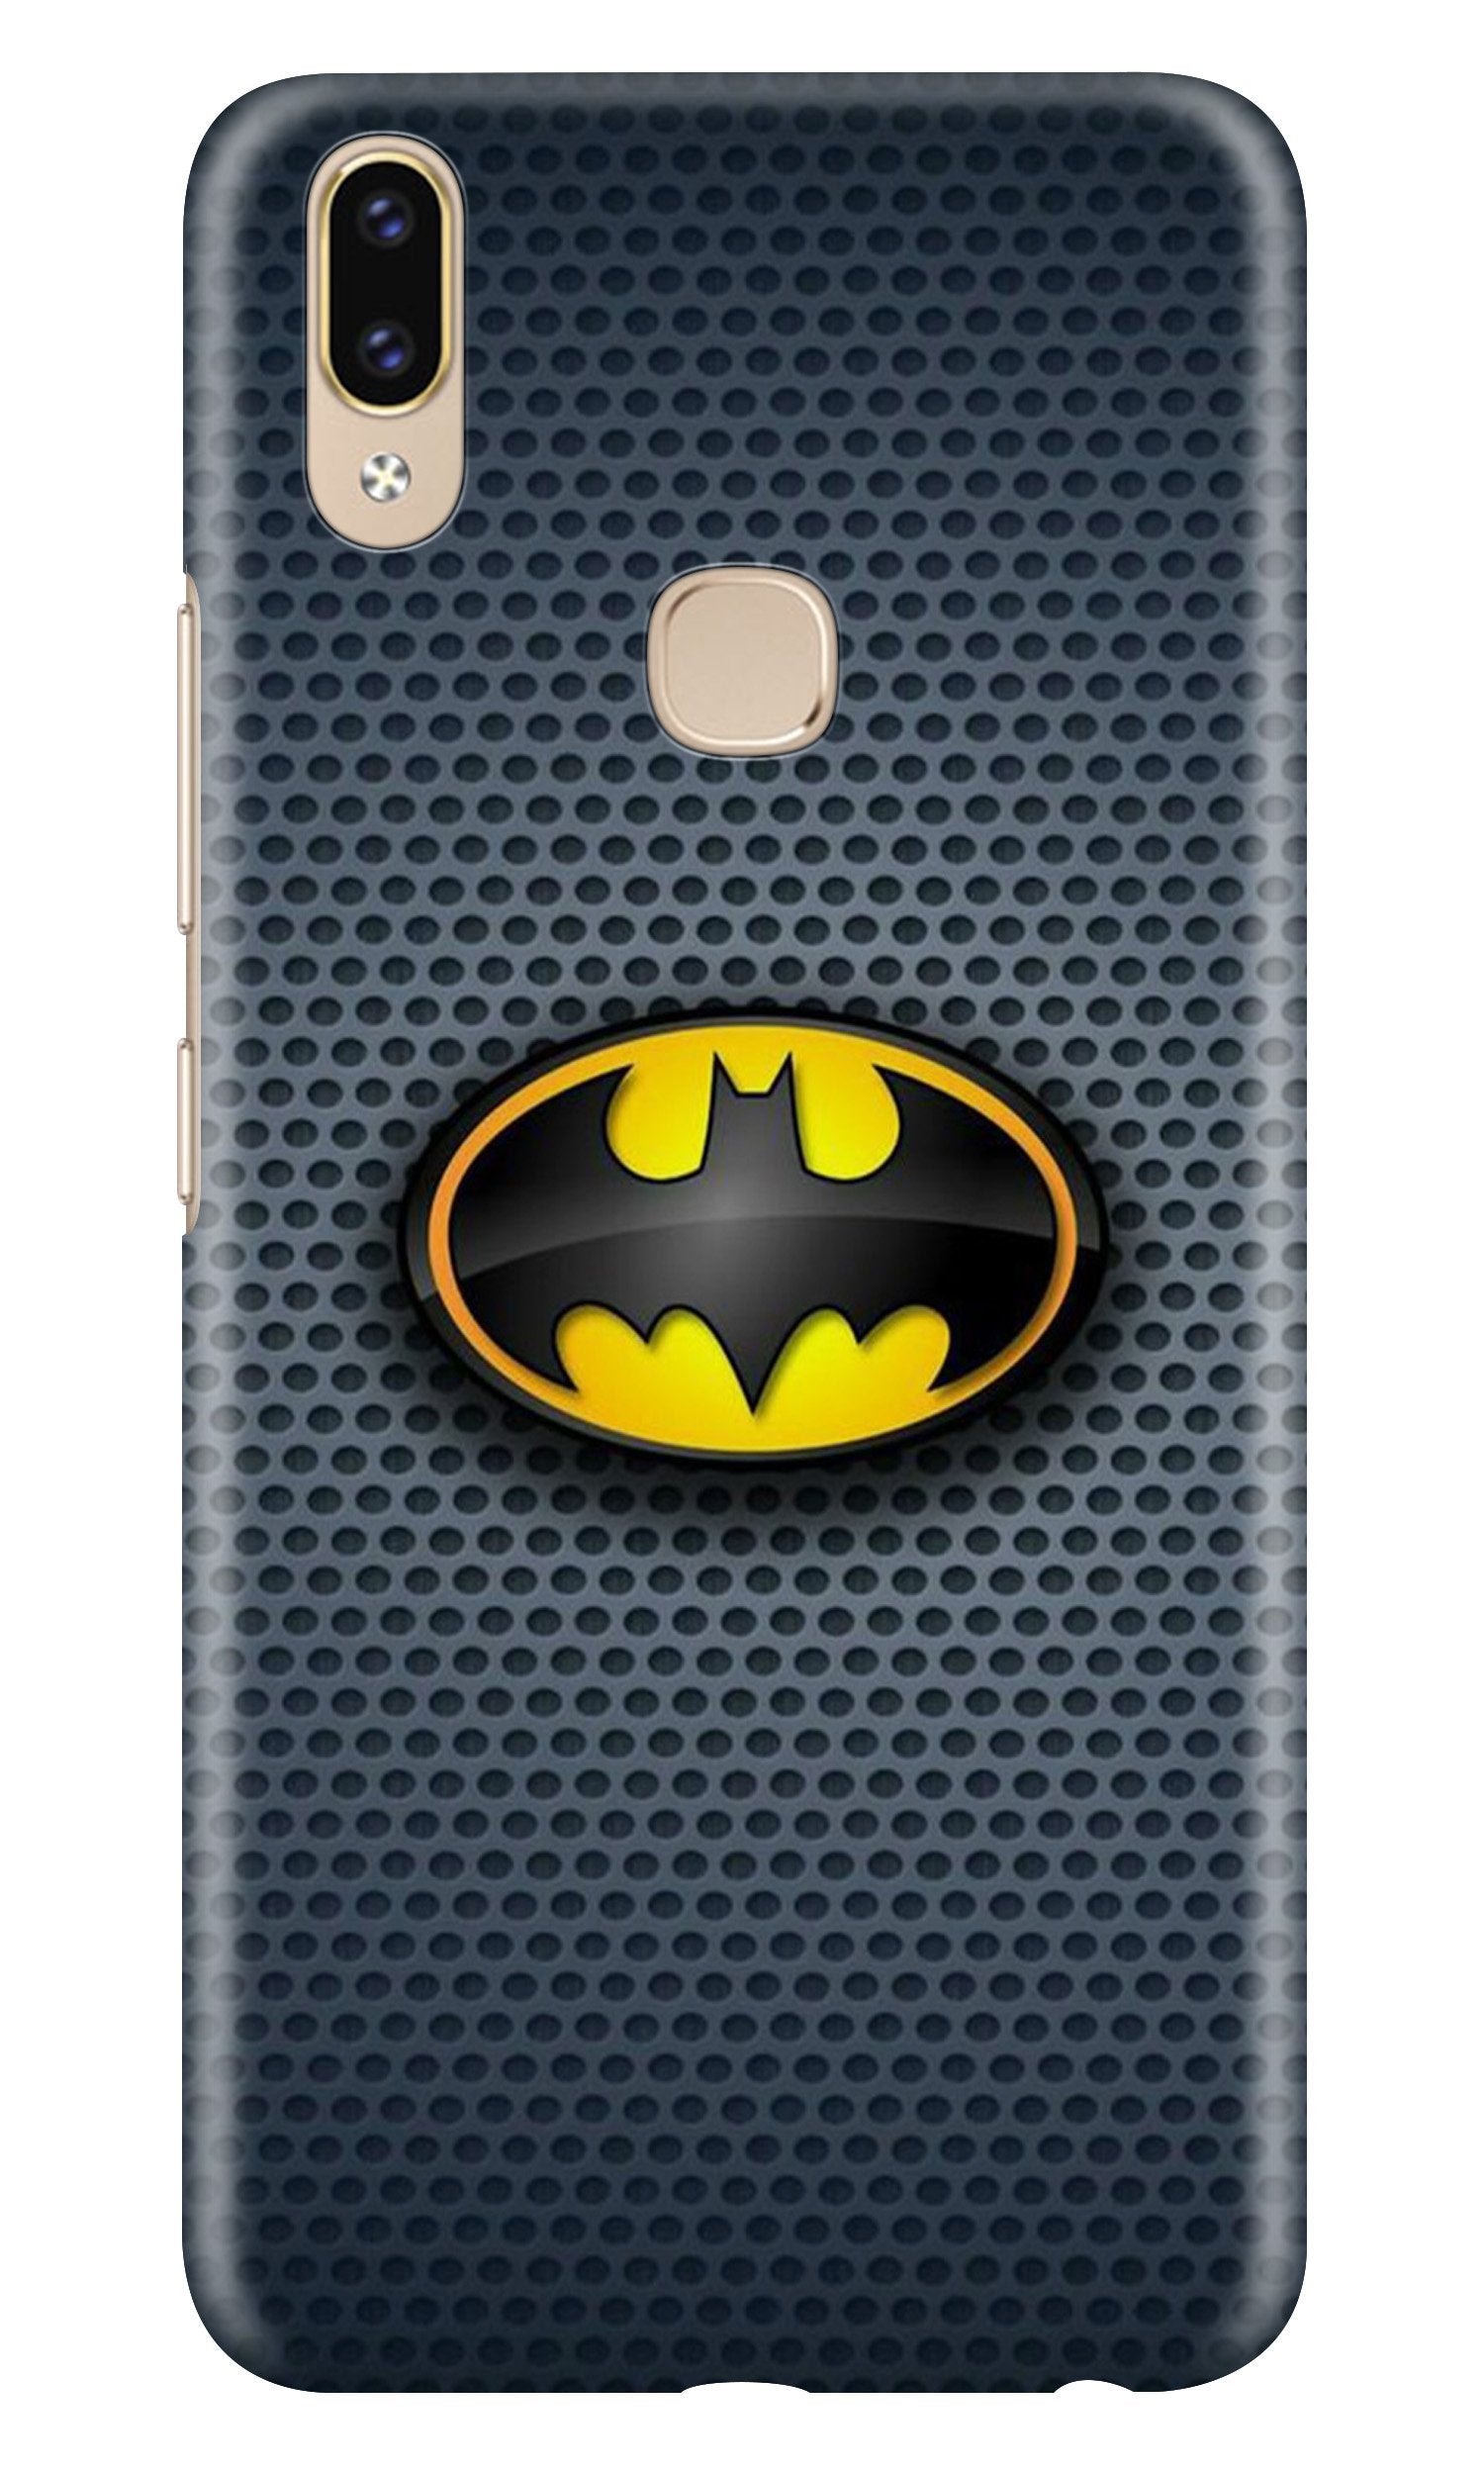 Batman Case for Asus Zenfone Max Pro M2 (Design No. 244)